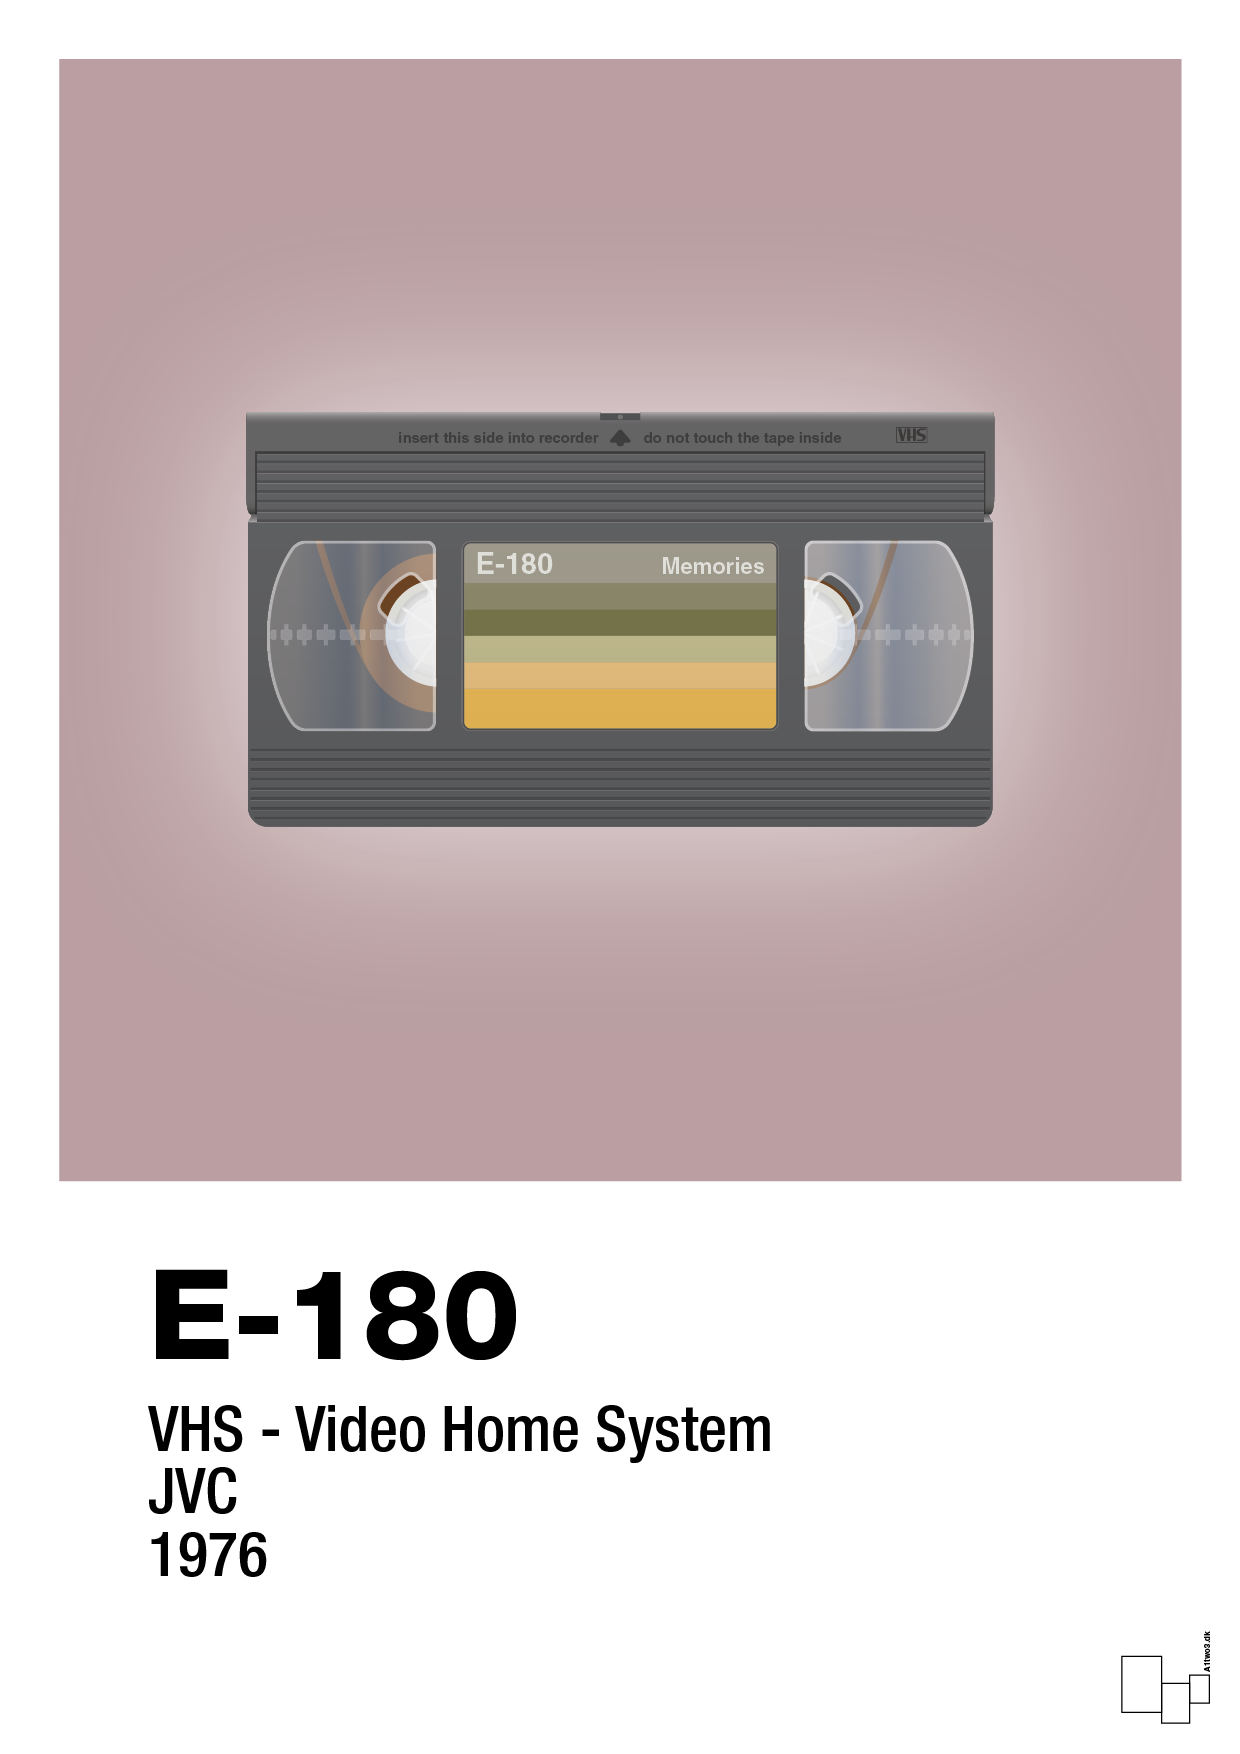 videobånd e-180 - Plakat med Grafik i Light Rose